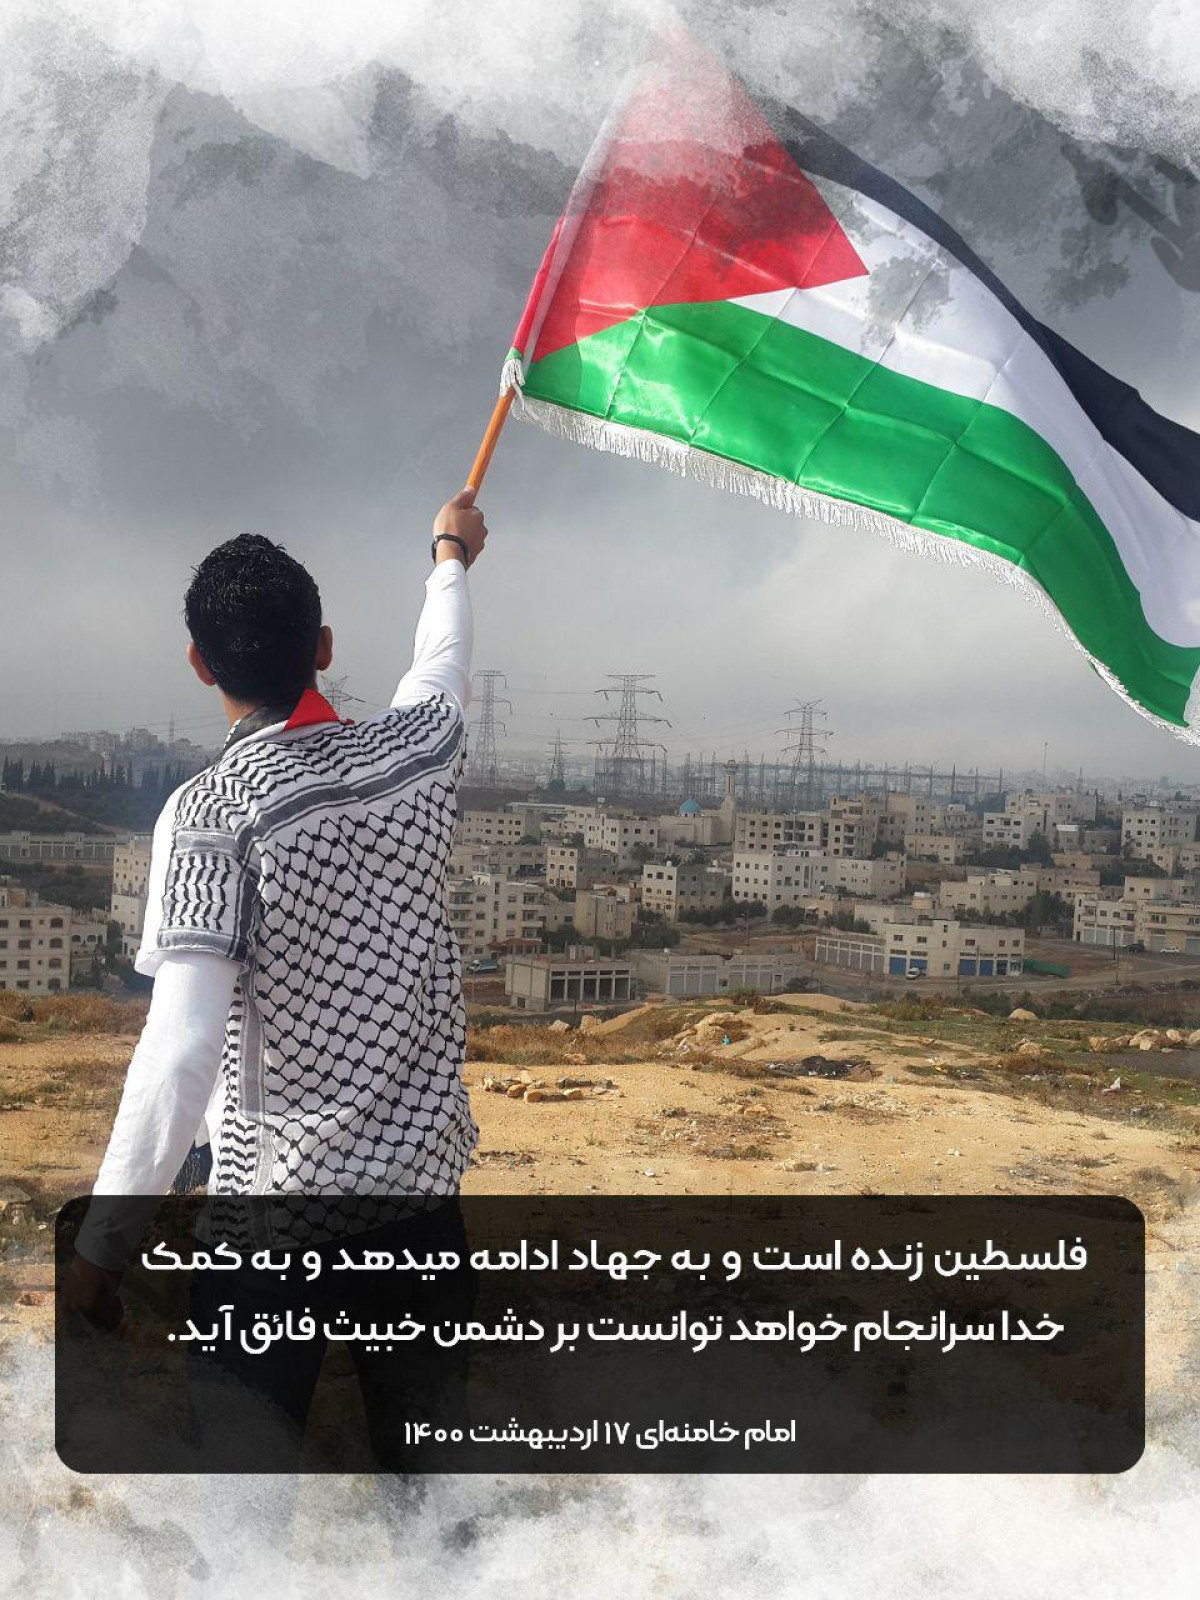 پوستر : فلسطين زنده است و به جهاد ادامه میدهد